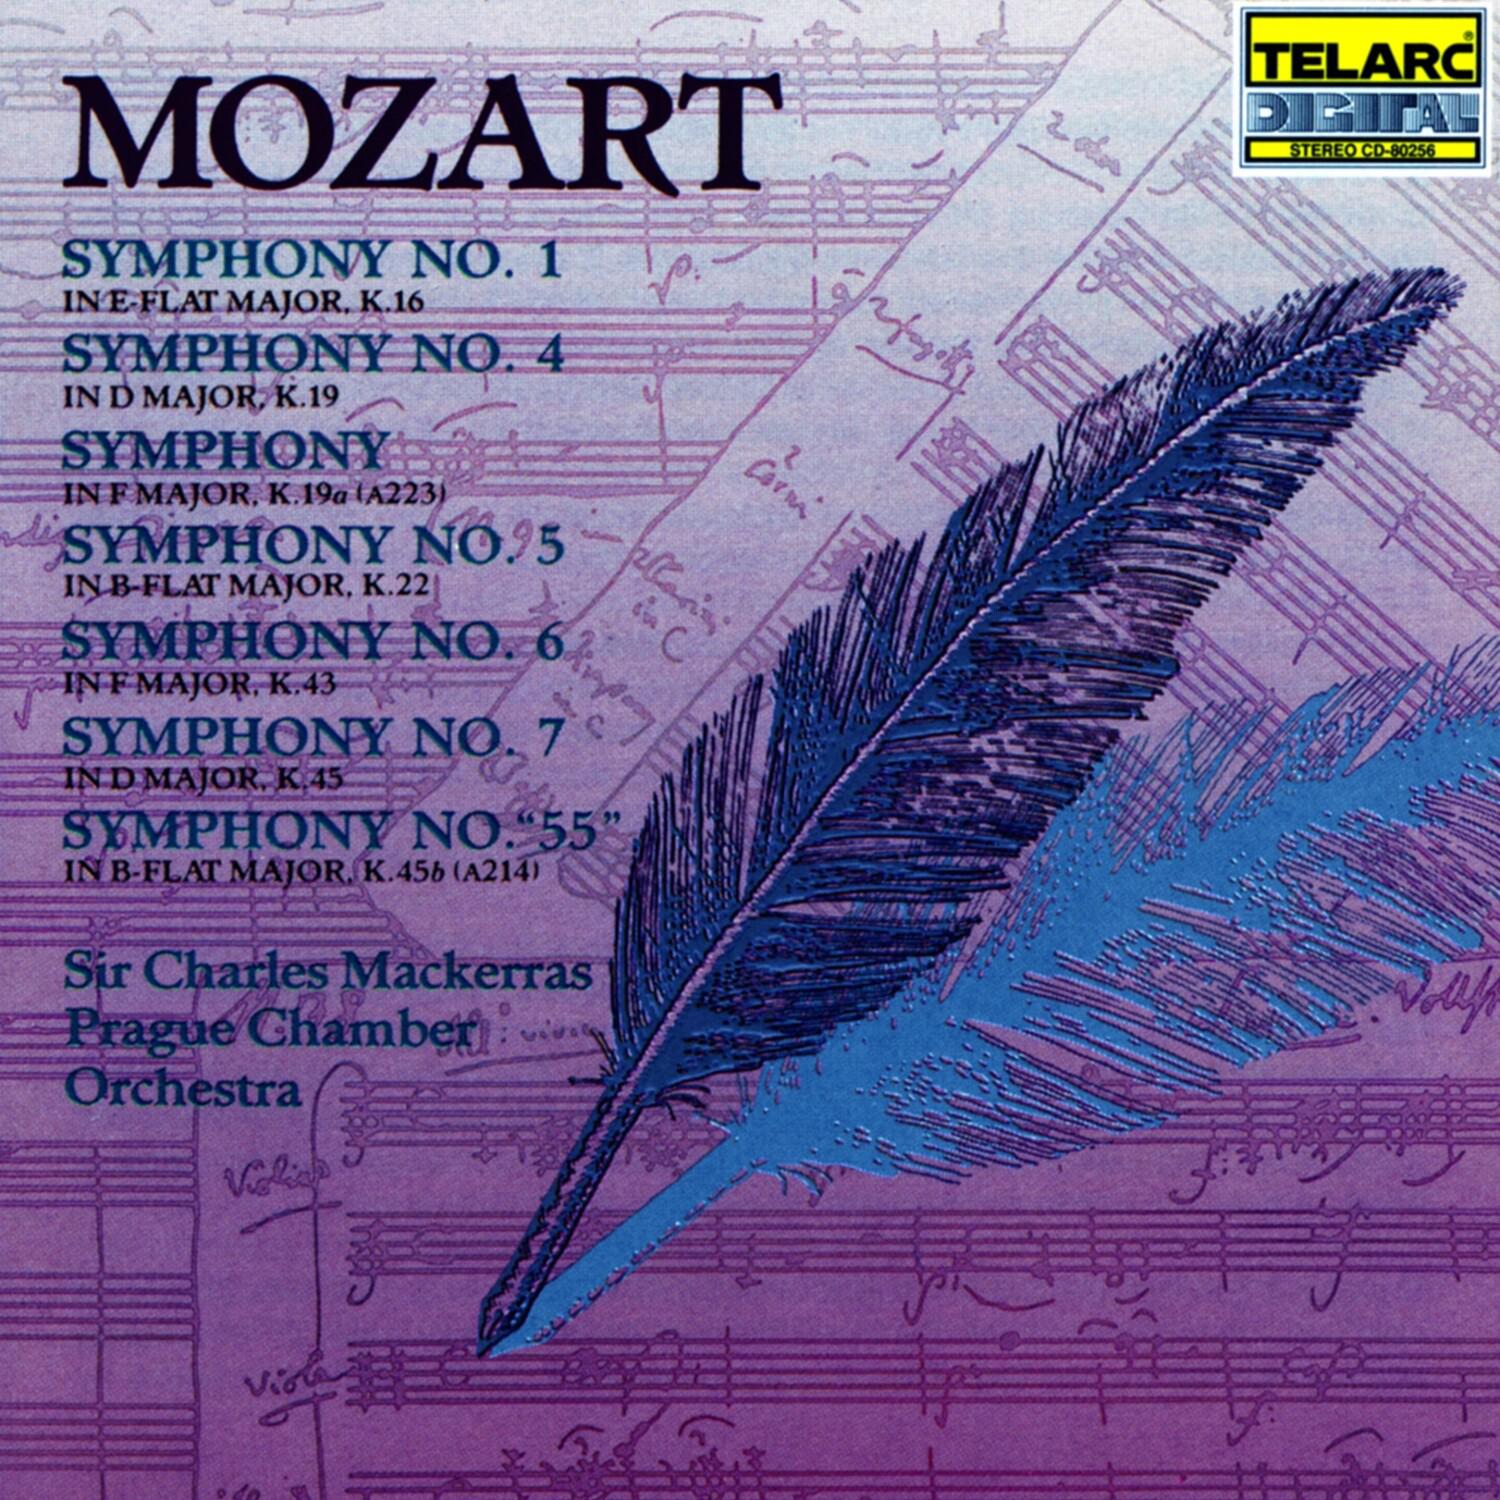 Symphony No. 7 in D major, K.45: I. Allegro